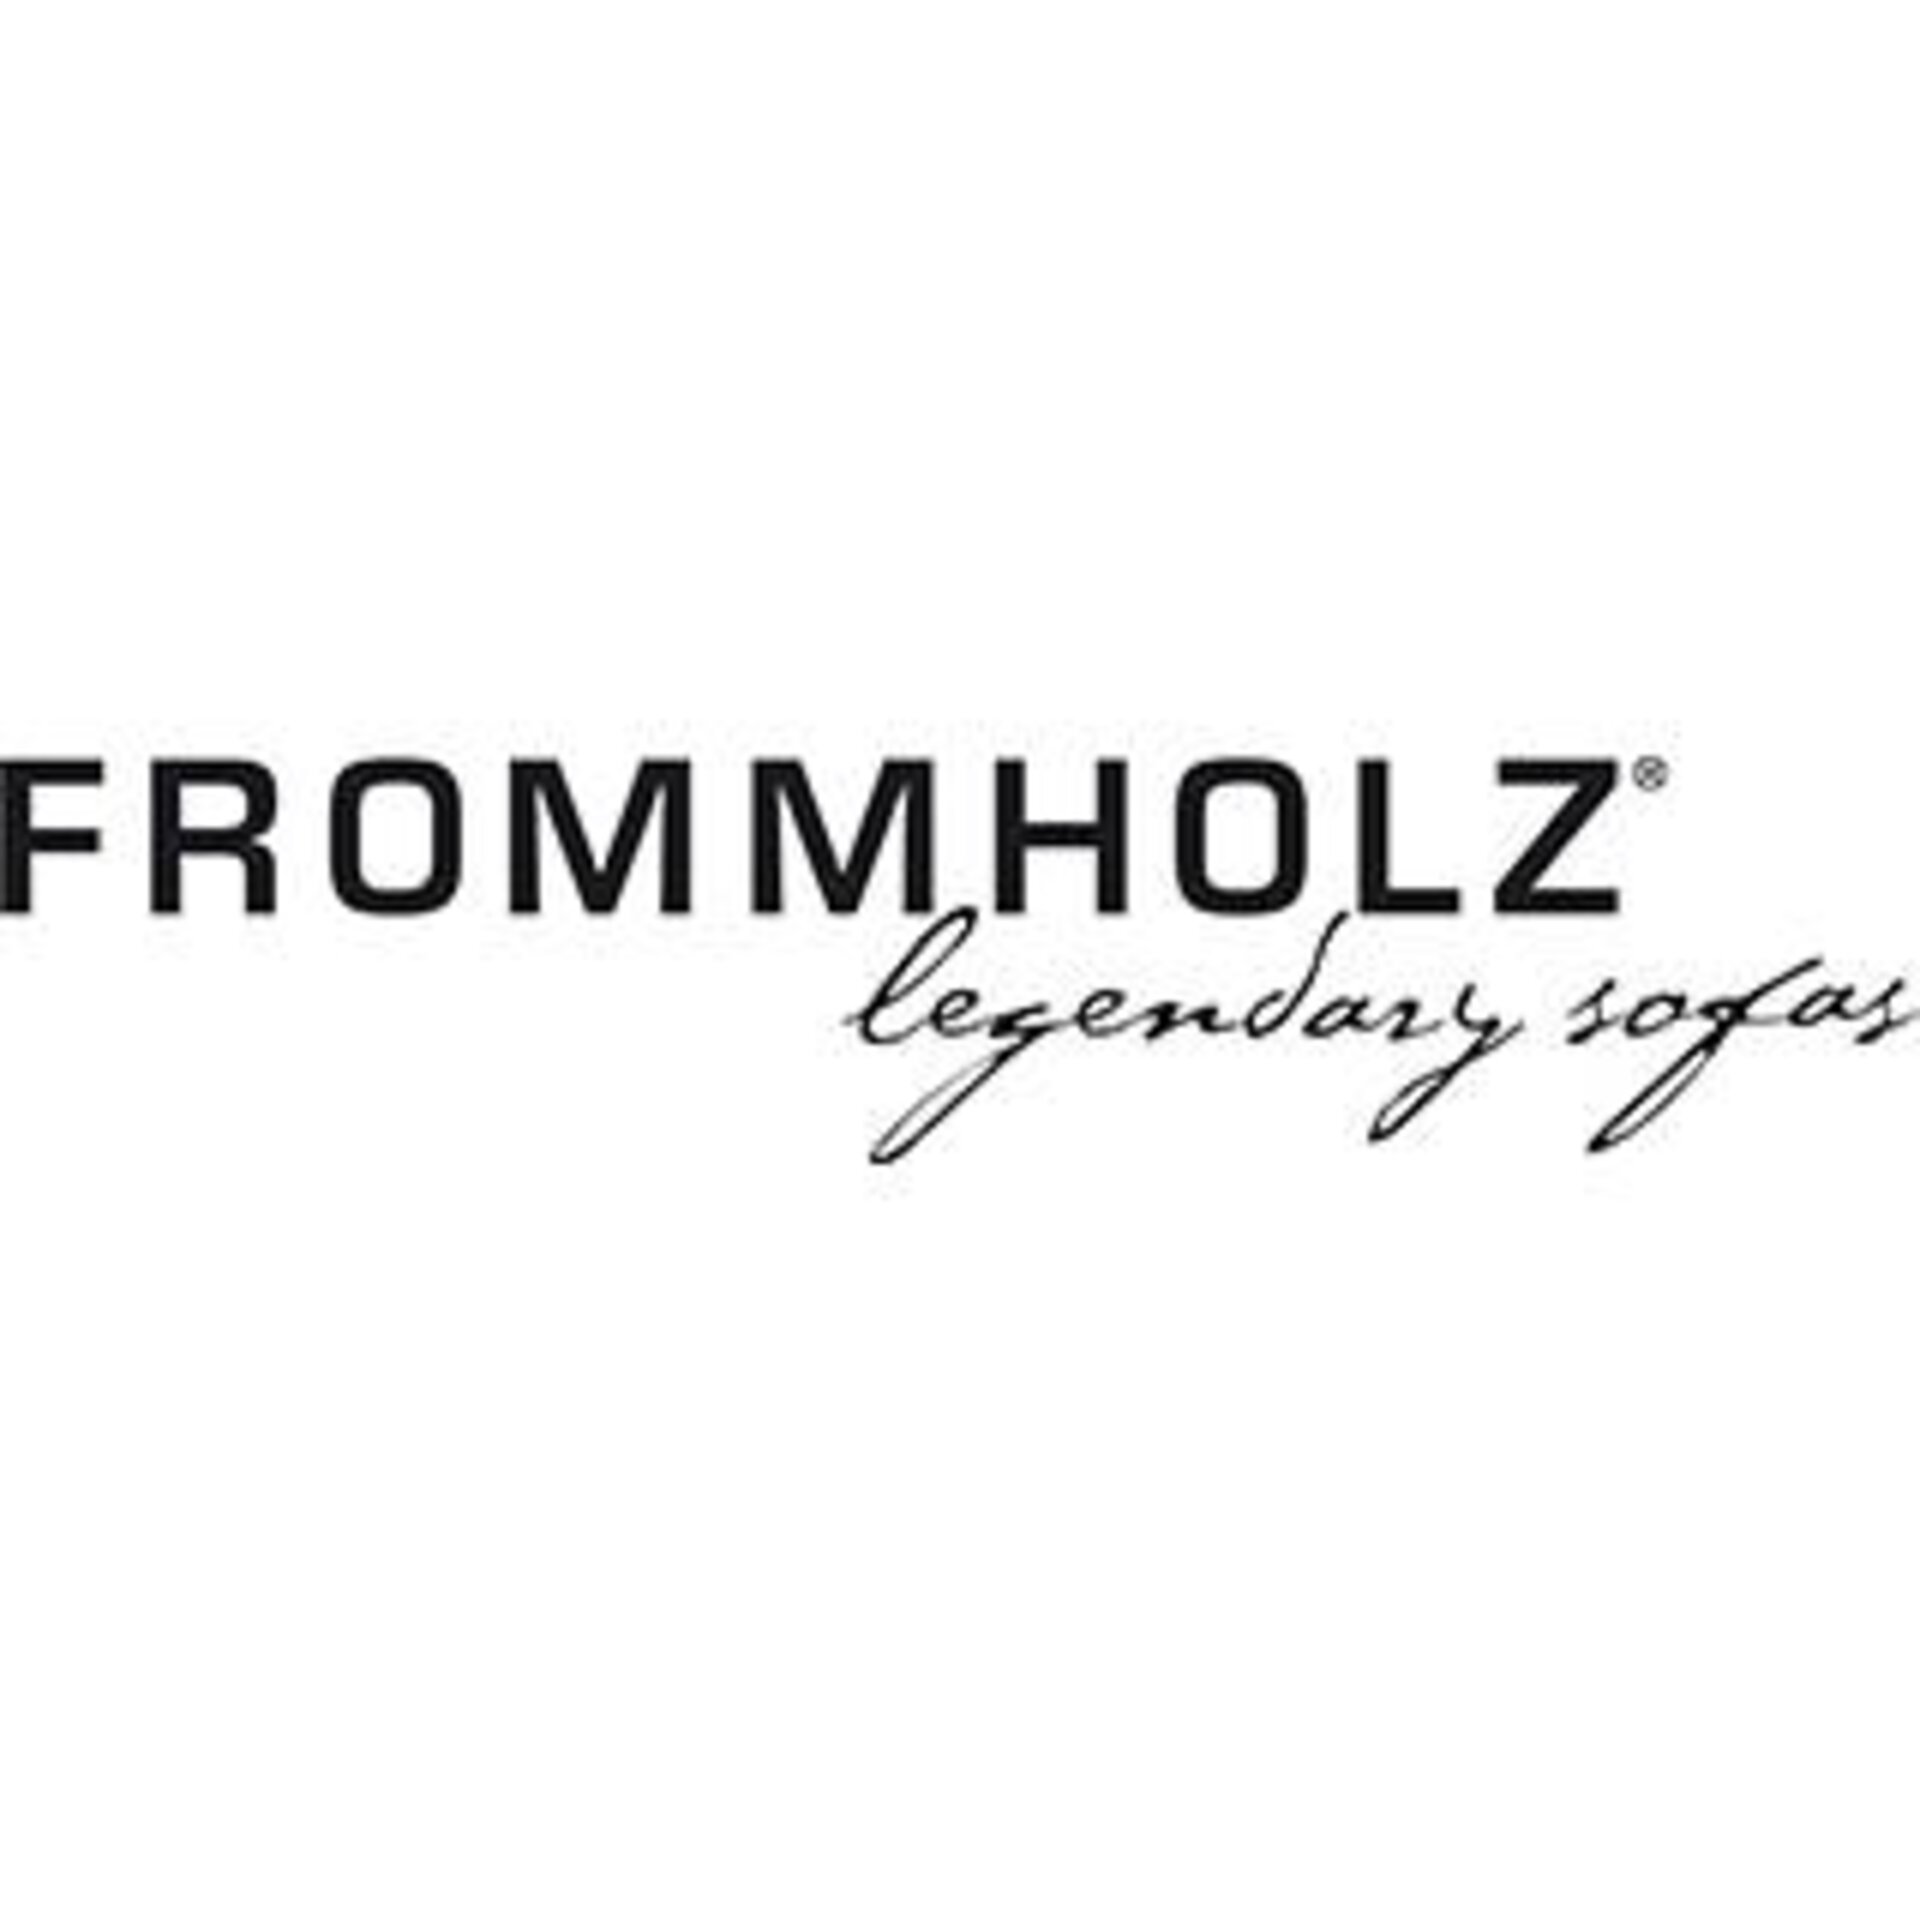 FROMMHOLZ - legendary sofas Logo